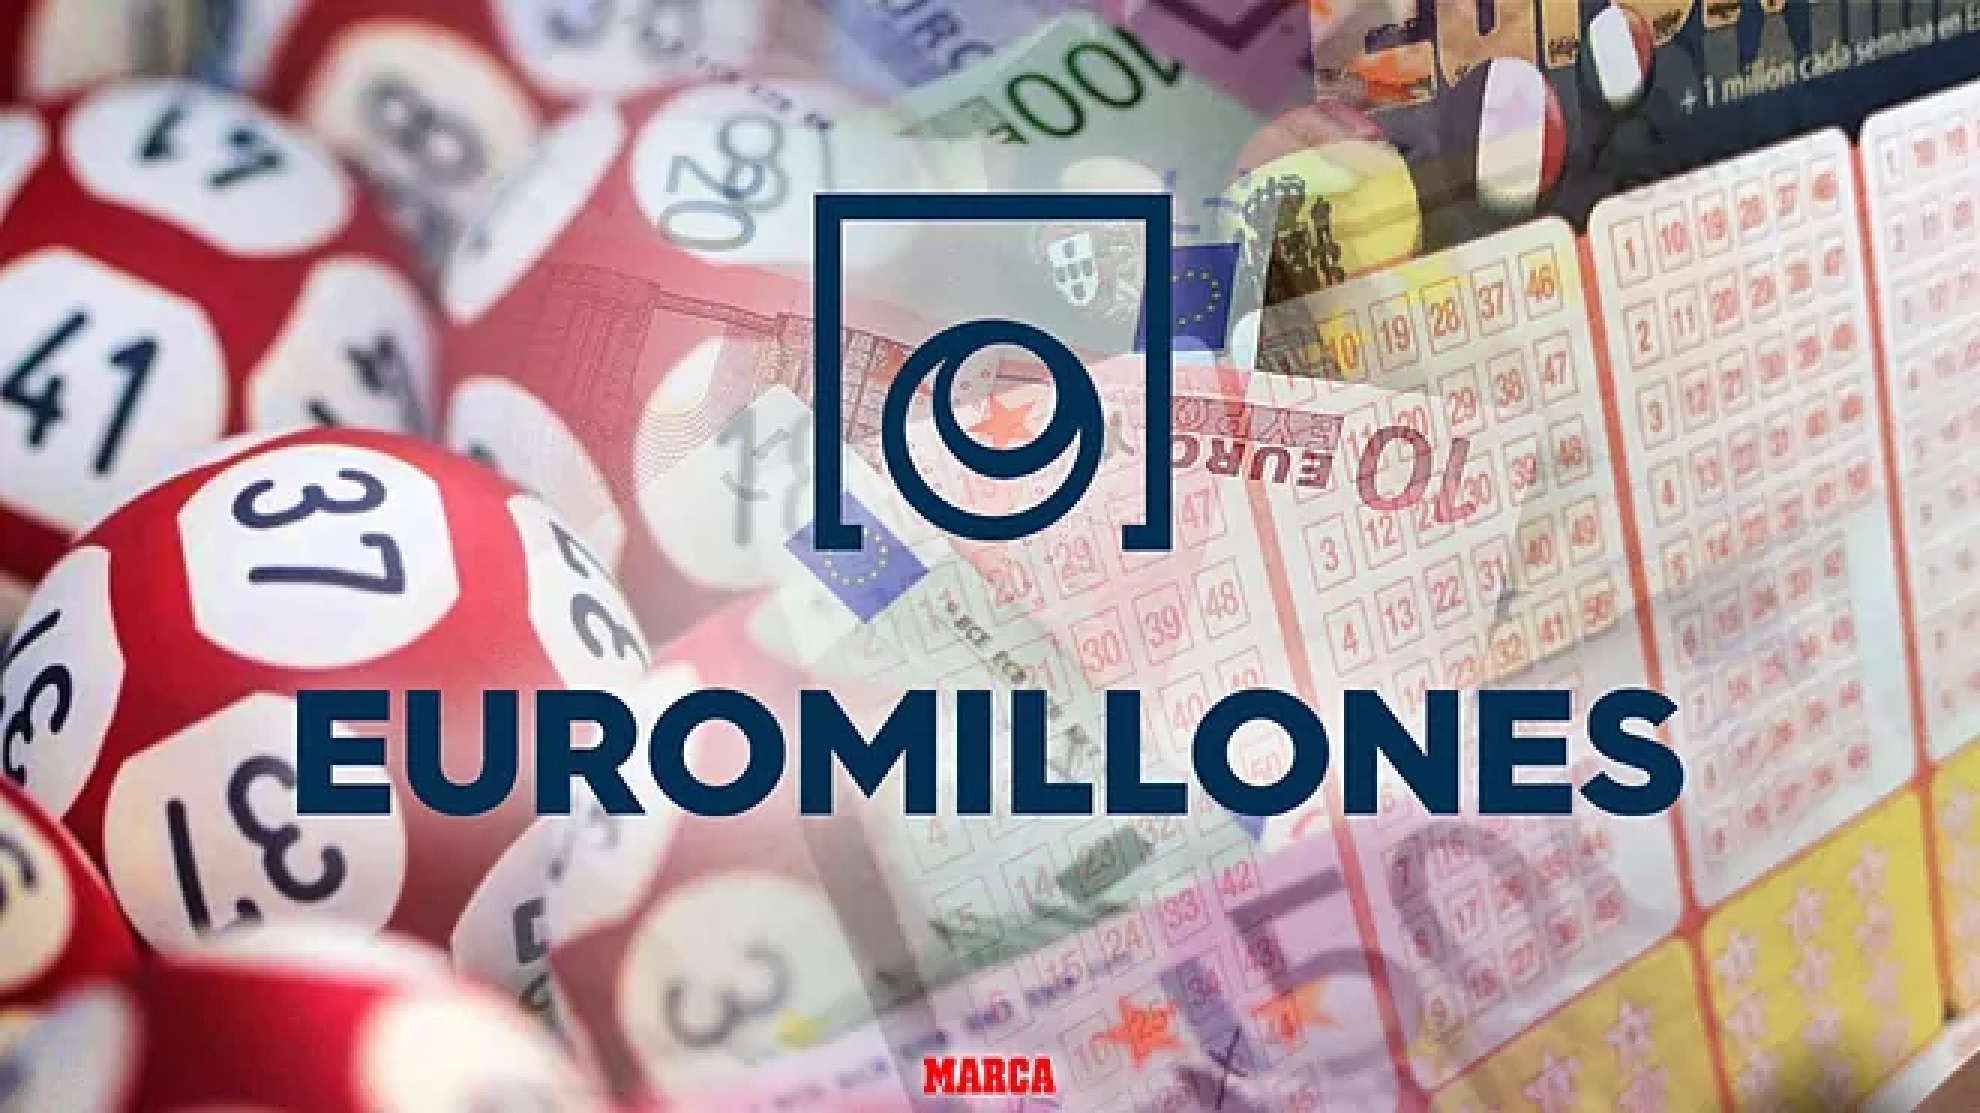 Euromillones: Comprobar resultado del sorteo hoy, martes 7 de junio de 2022